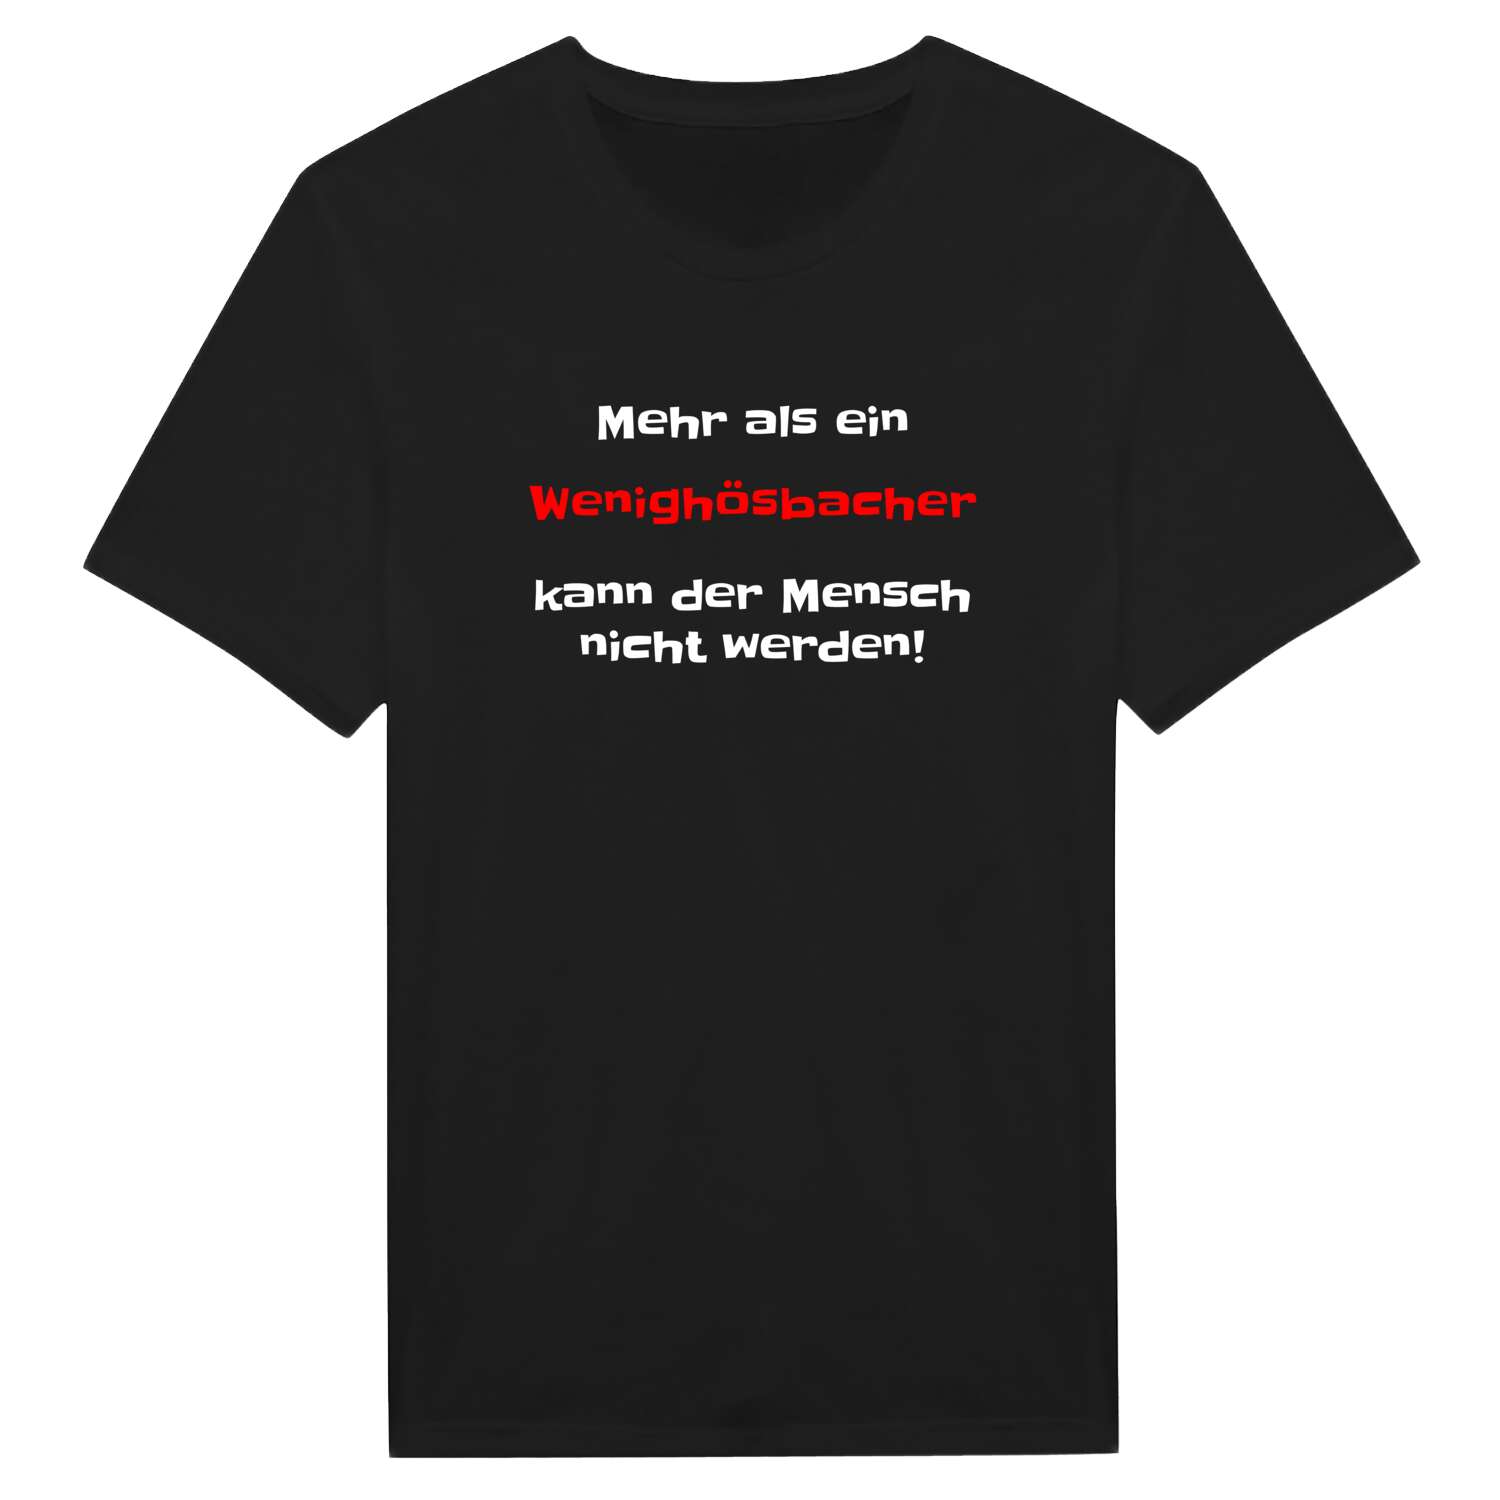 Wenighösbach T-Shirt »Mehr als ein«